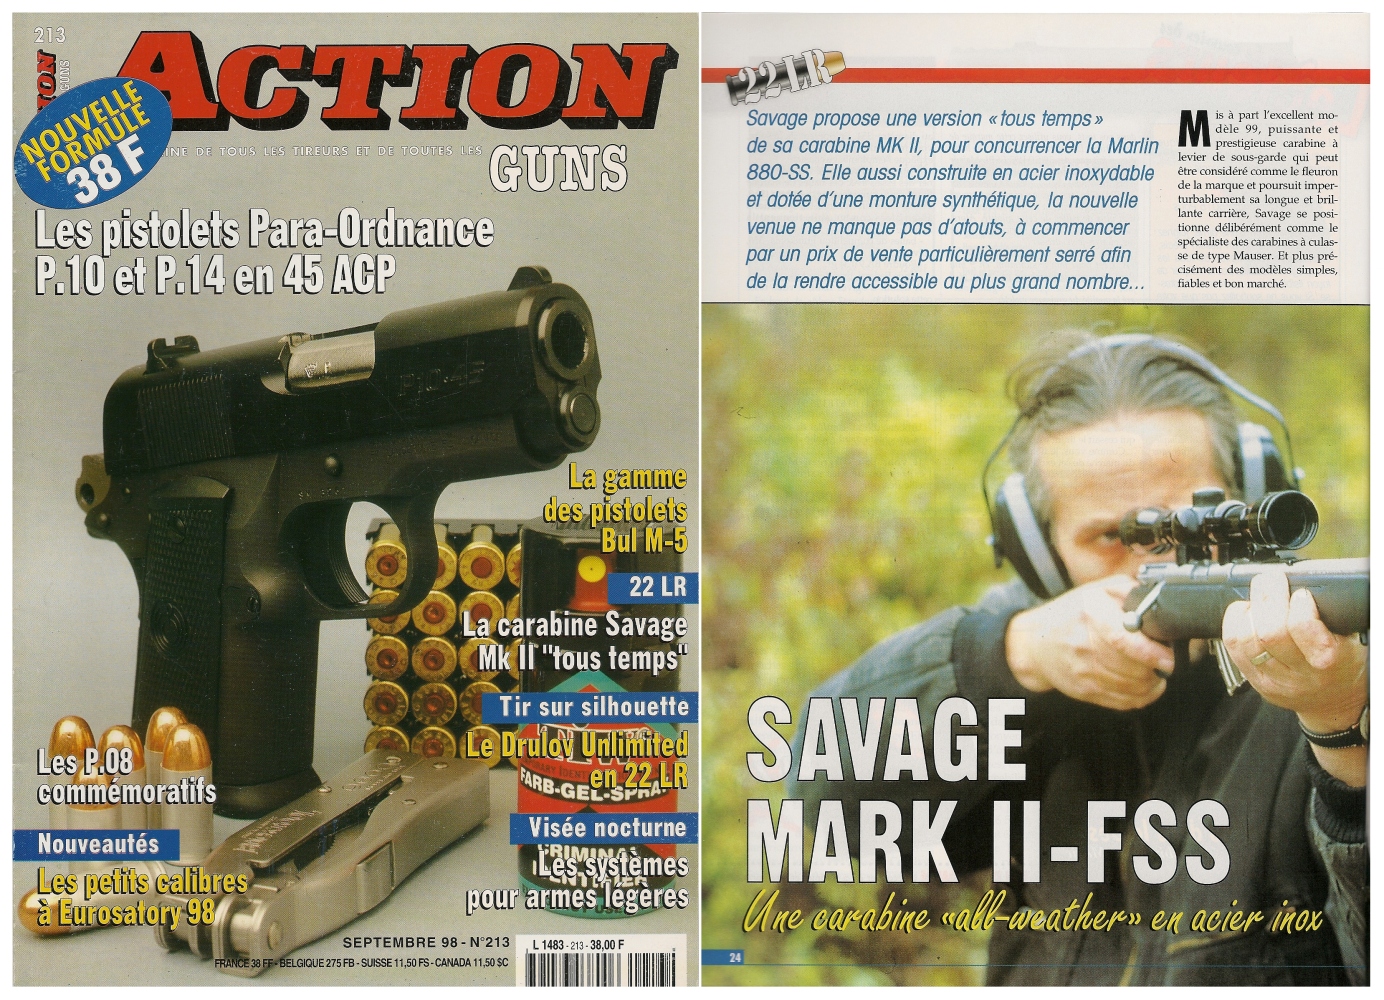 Le banc d'essai de la carabine Savage MK II-FSS « Tous temps » avait été publié sur 5 pages dans le magazine Action Guns n° 213 (septembre 1998).